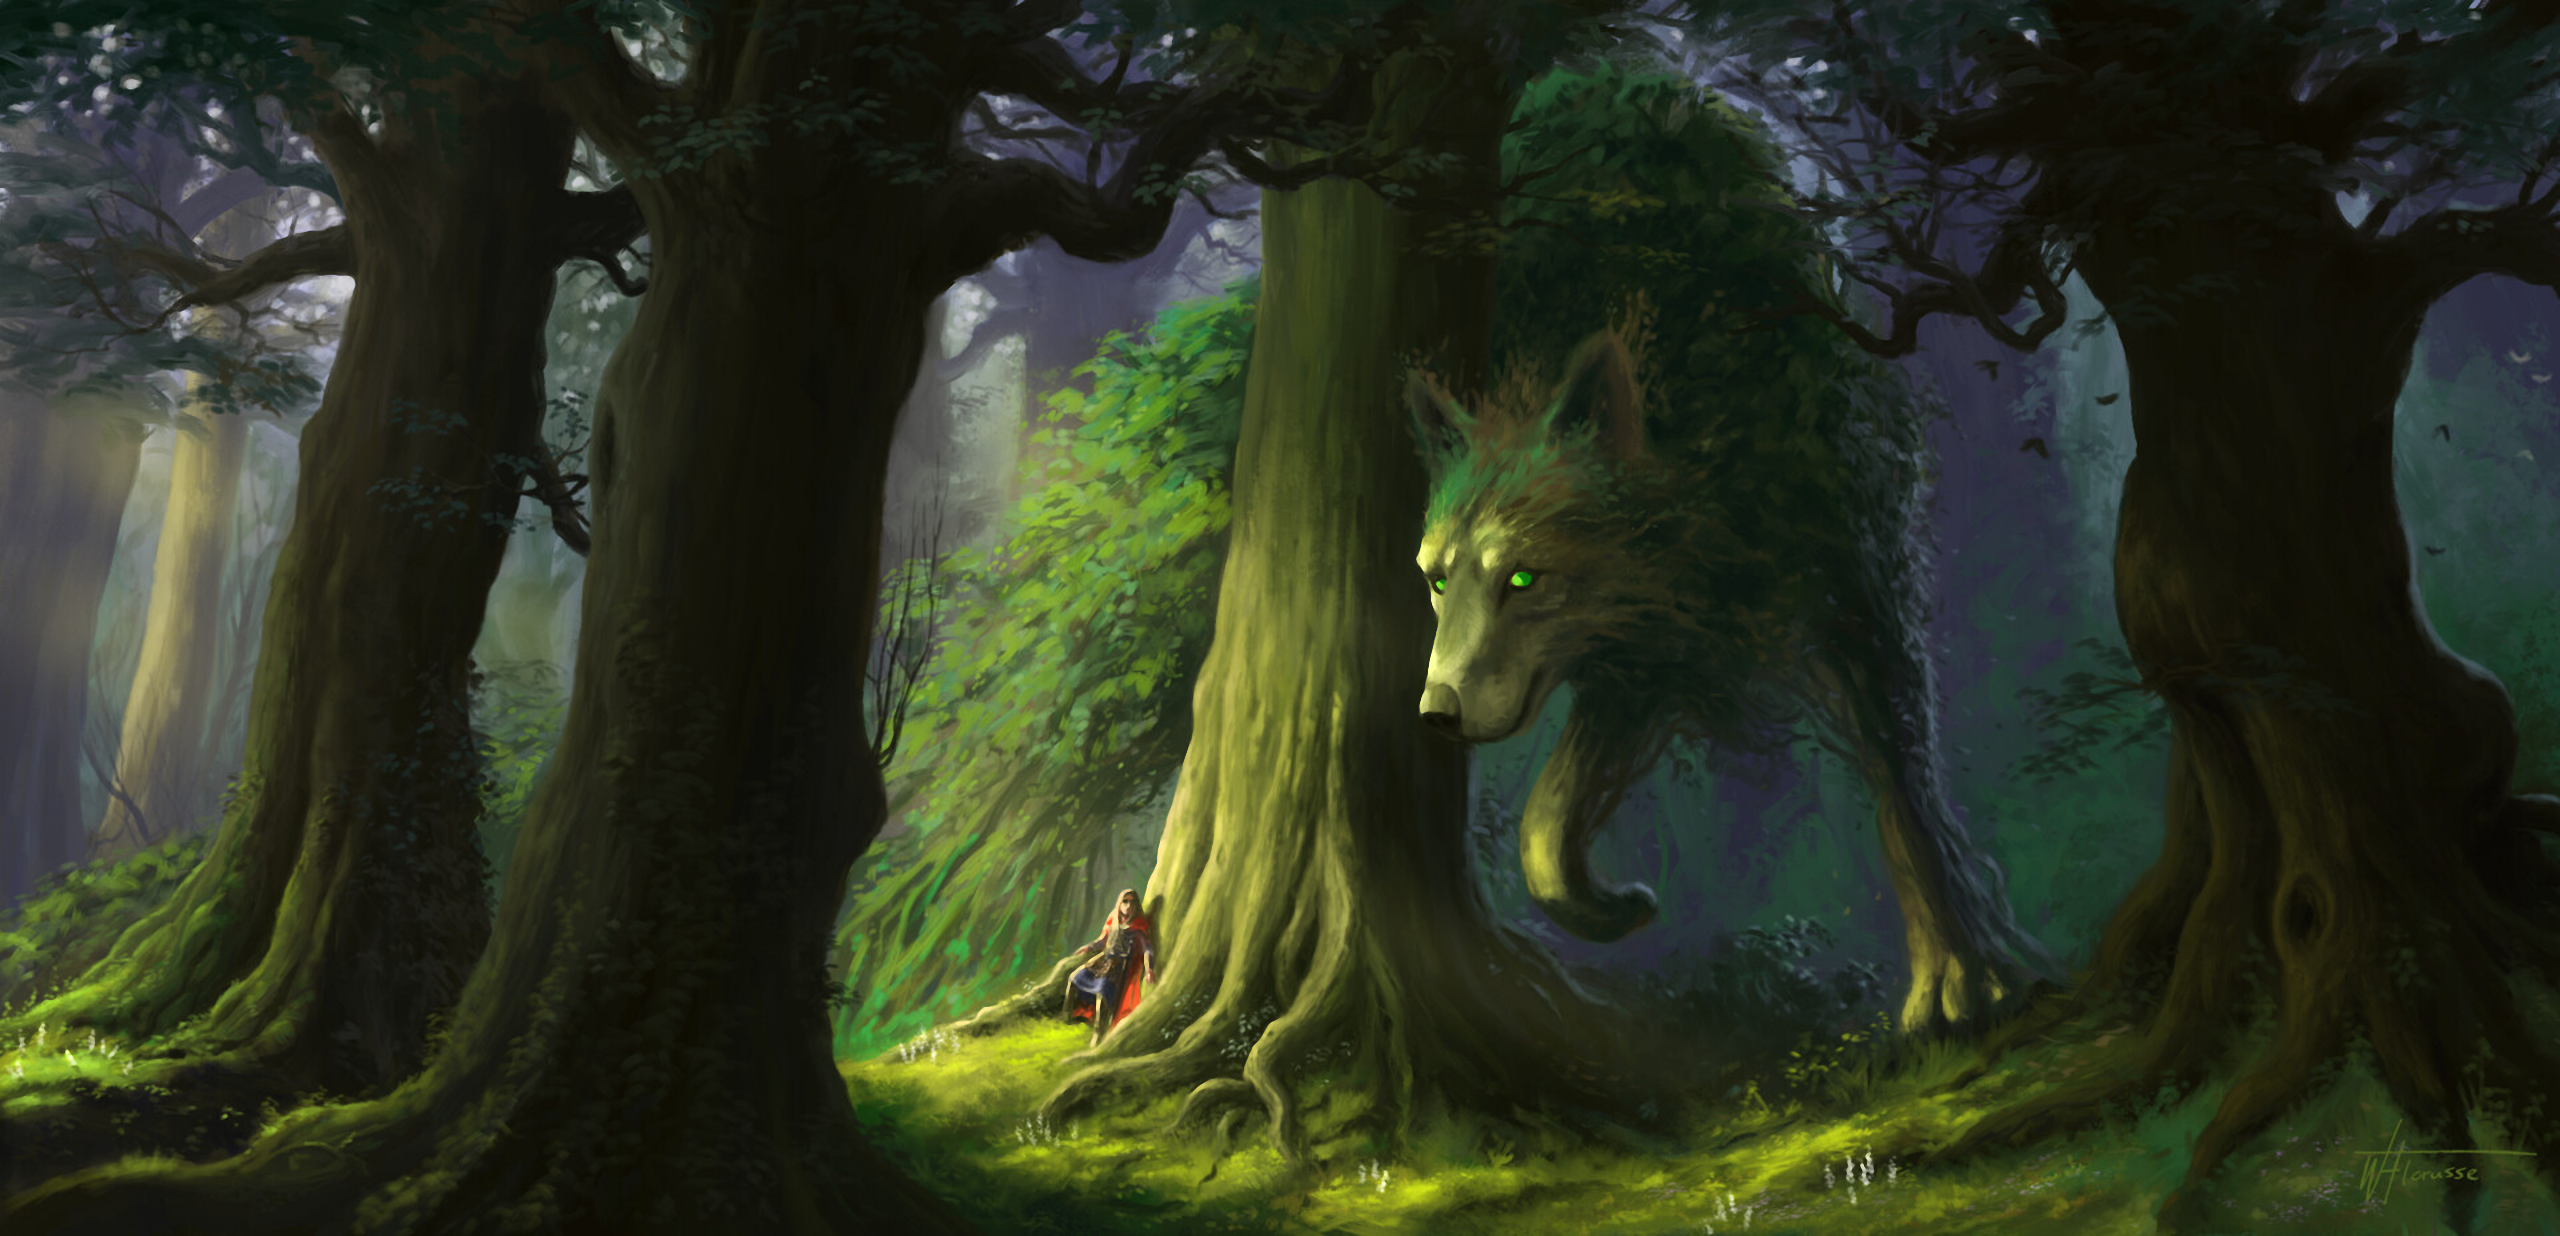 Digital Art Artwork Fantasy Art Nature Landscape Forest Trees